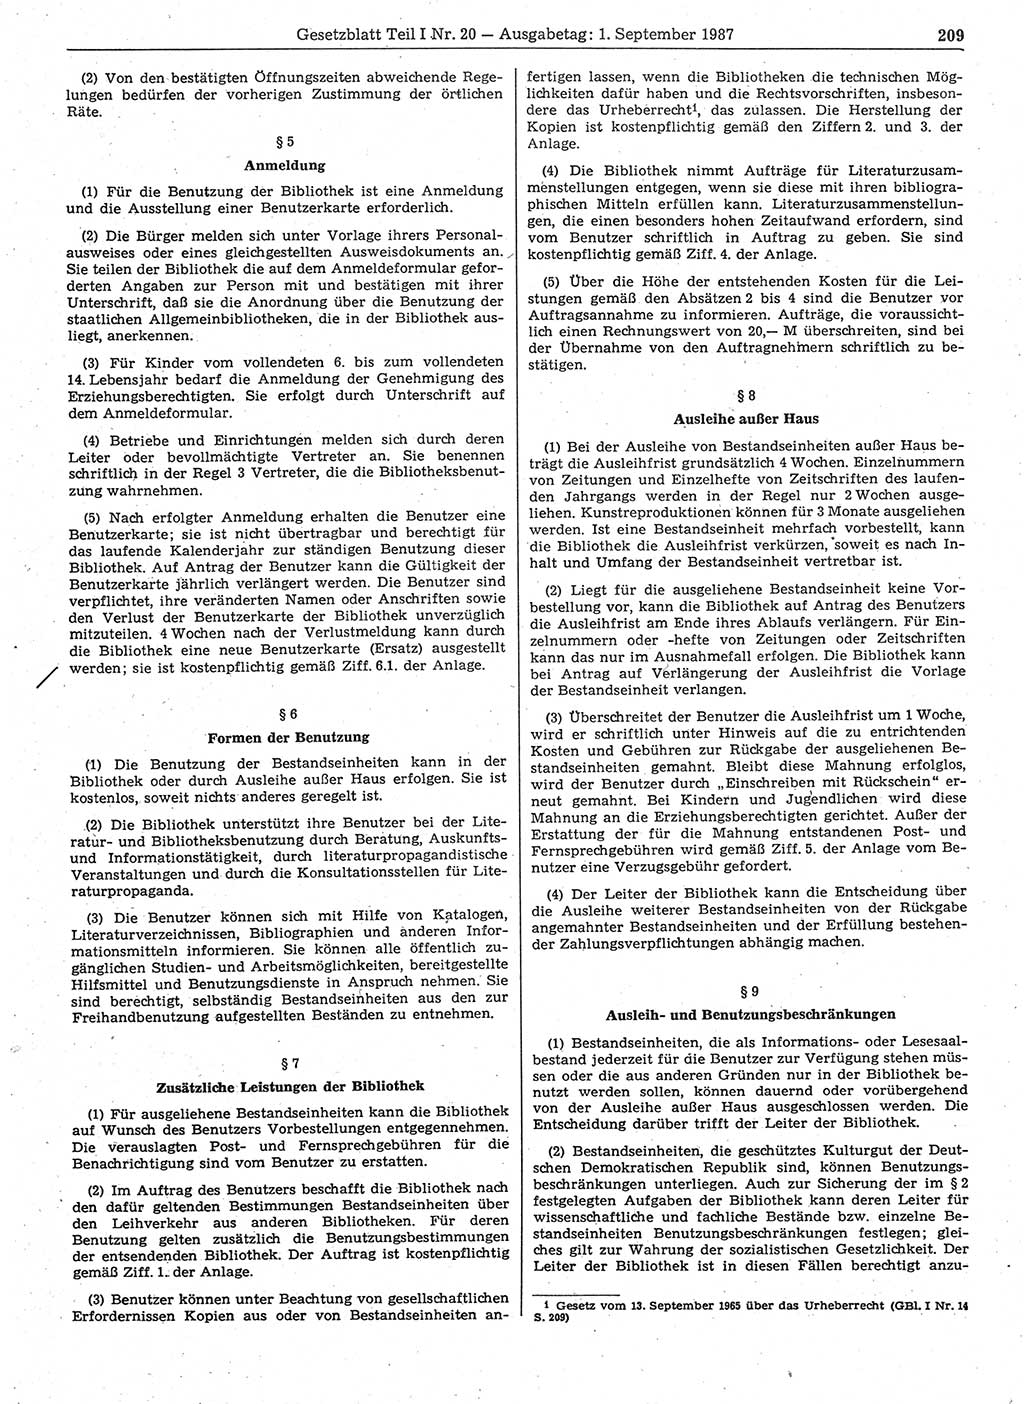 Gesetzblatt (GBl.) der Deutschen Demokratischen Republik (DDR) Teil Ⅰ 1987, Seite 209 (GBl. DDR Ⅰ 1987, S. 209)